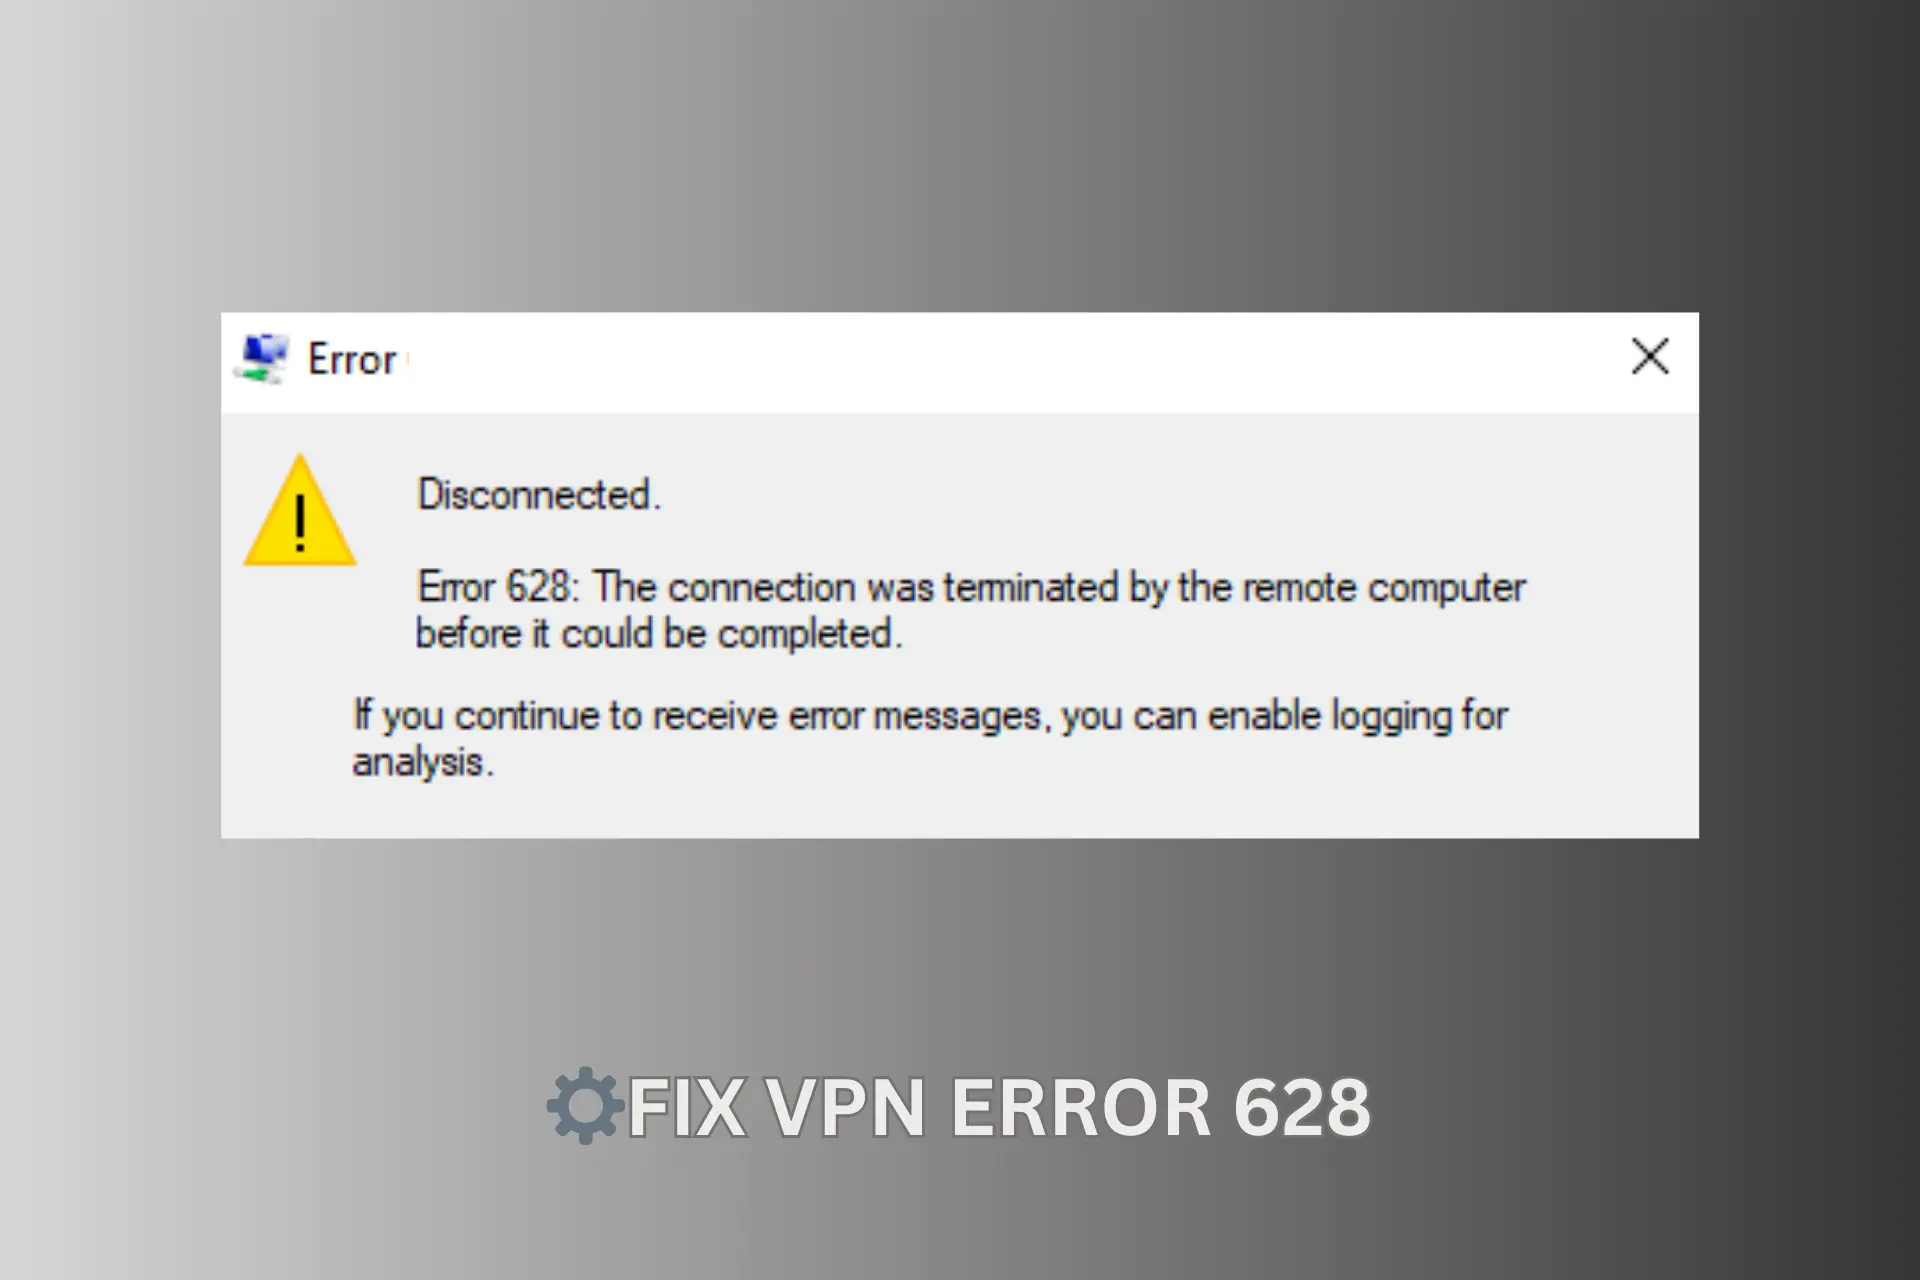 VPN ERROR 628